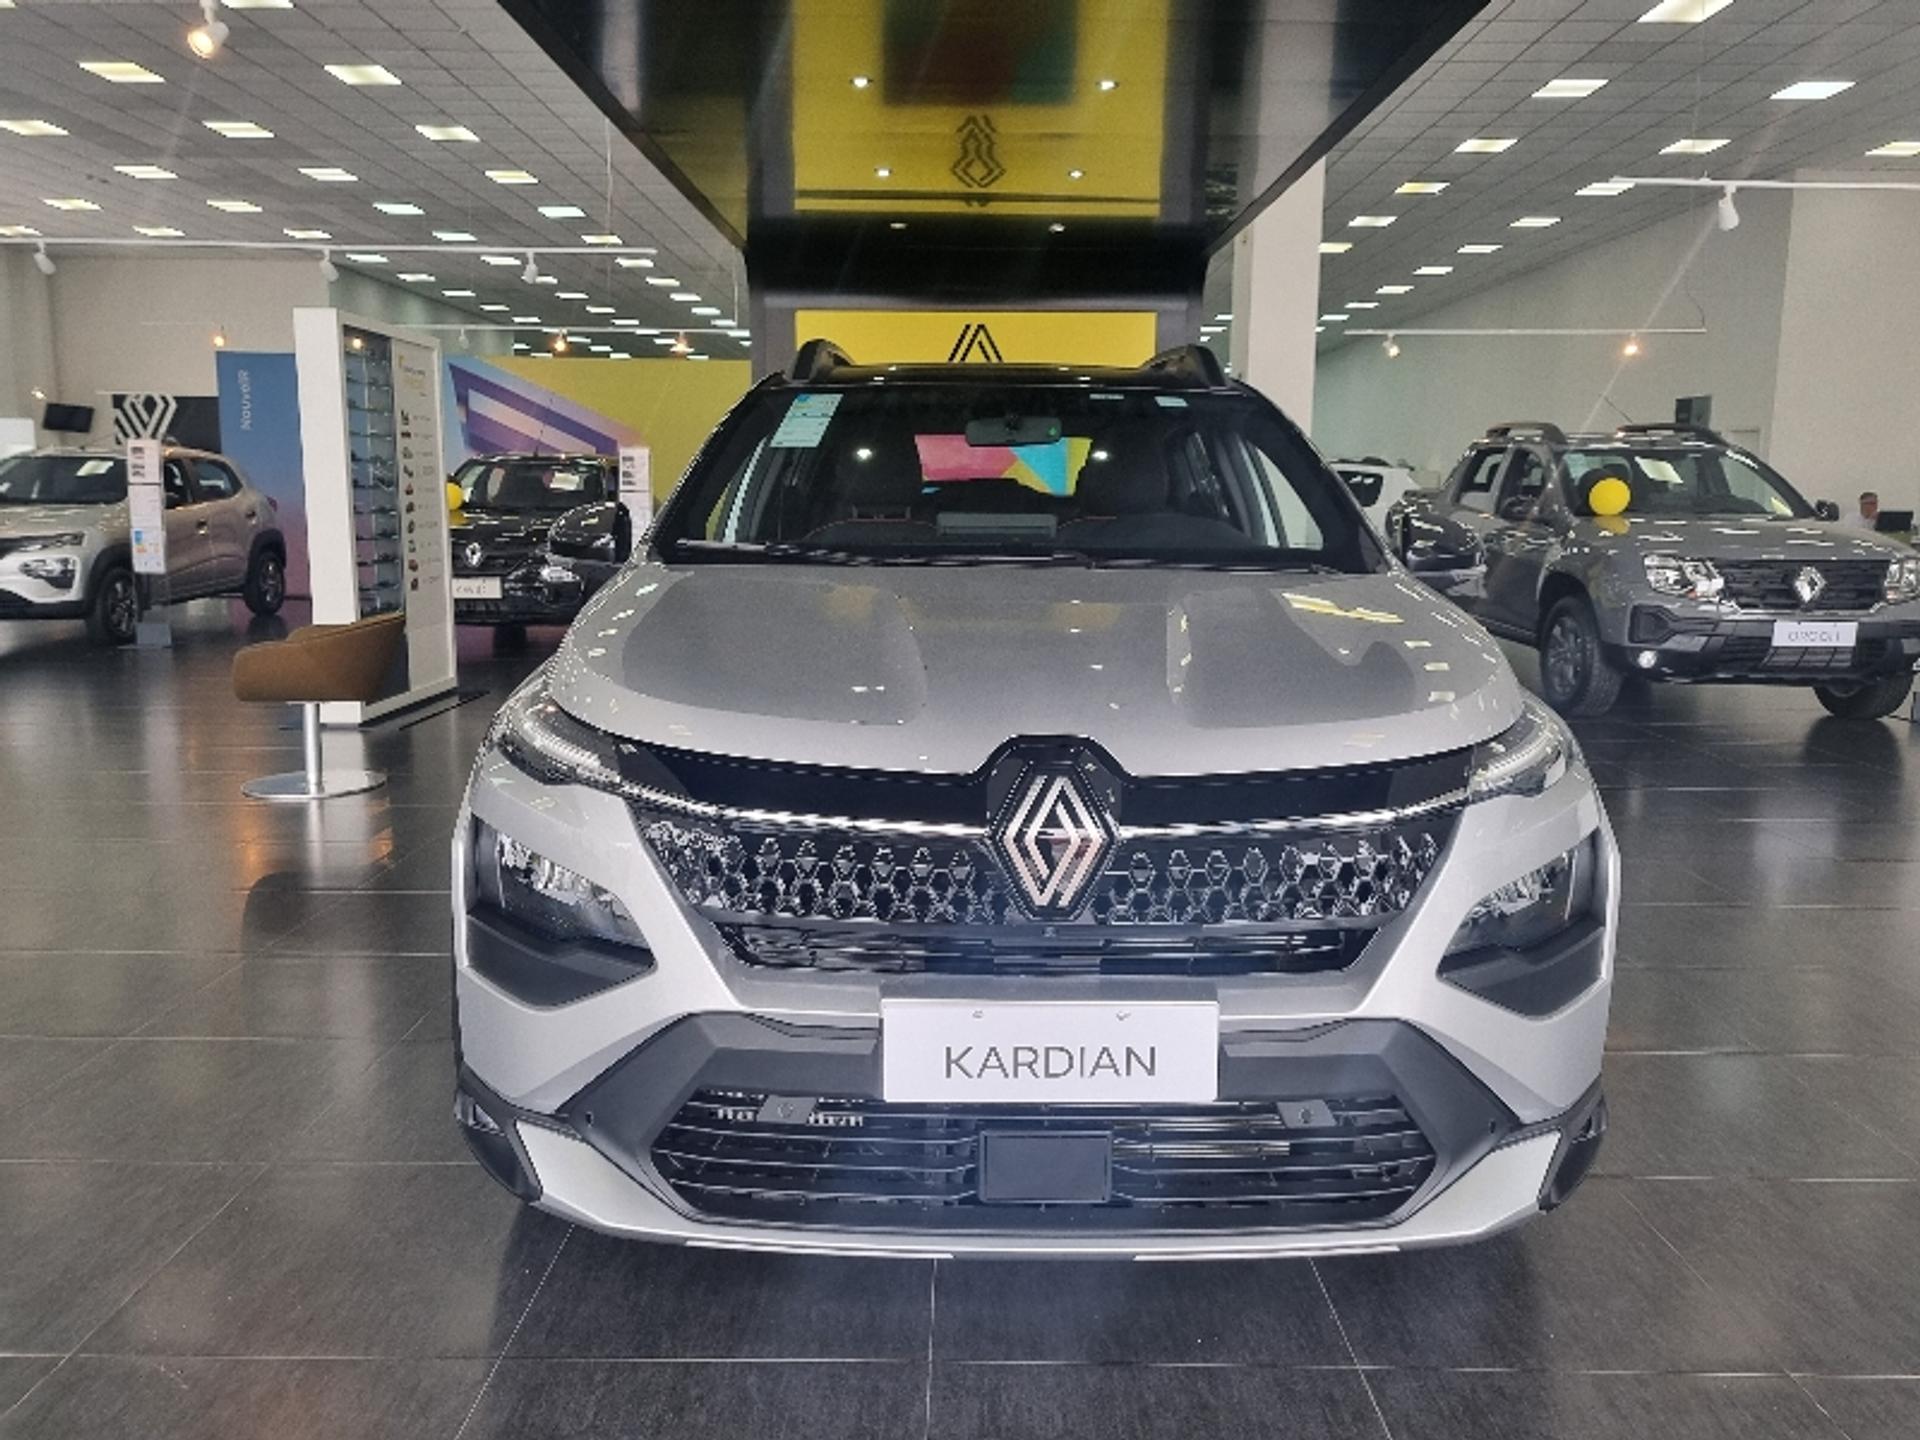 Renault Kardian registra crescimento de mais de 70% nas vendas em abril